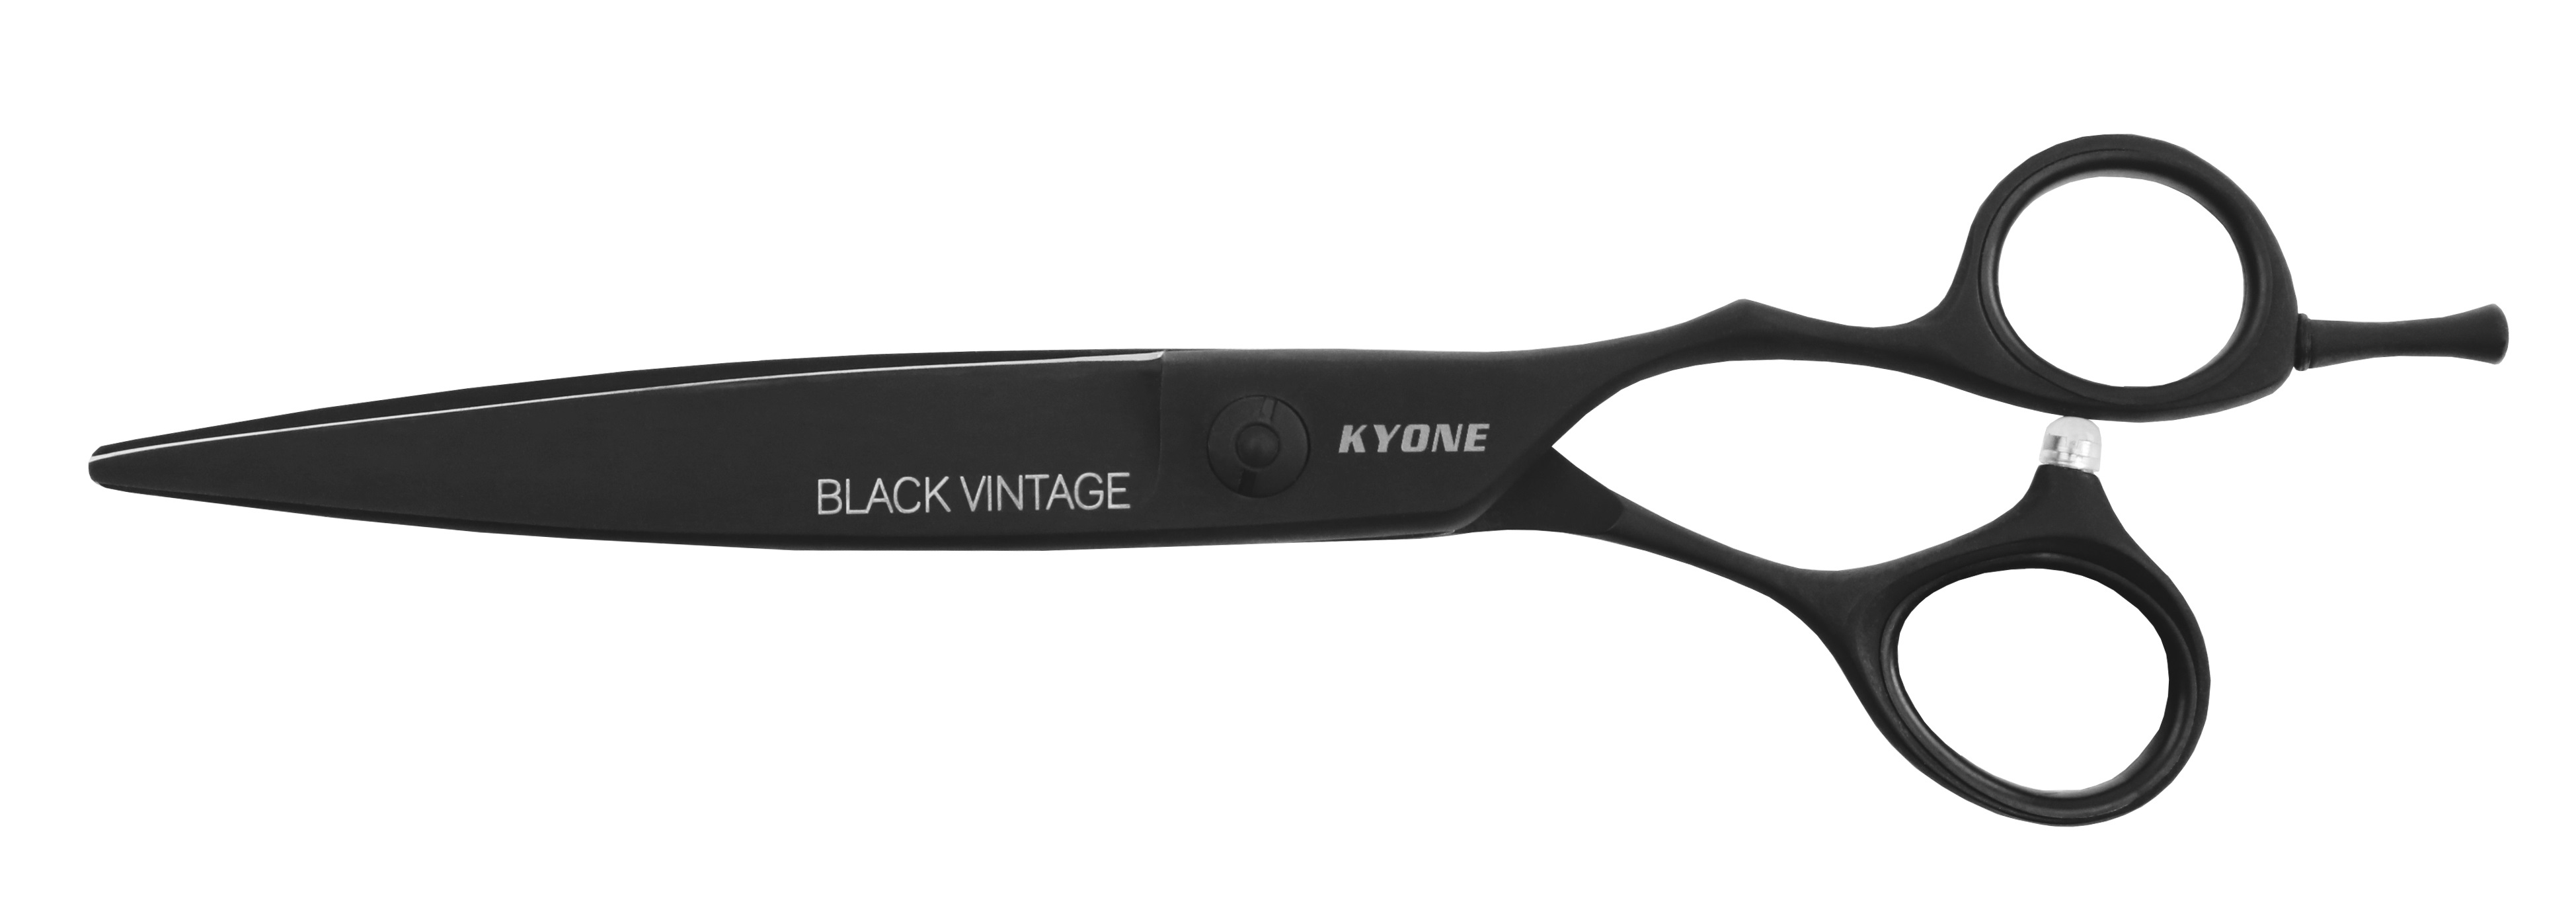 800 Black Vintage - 7 Inch